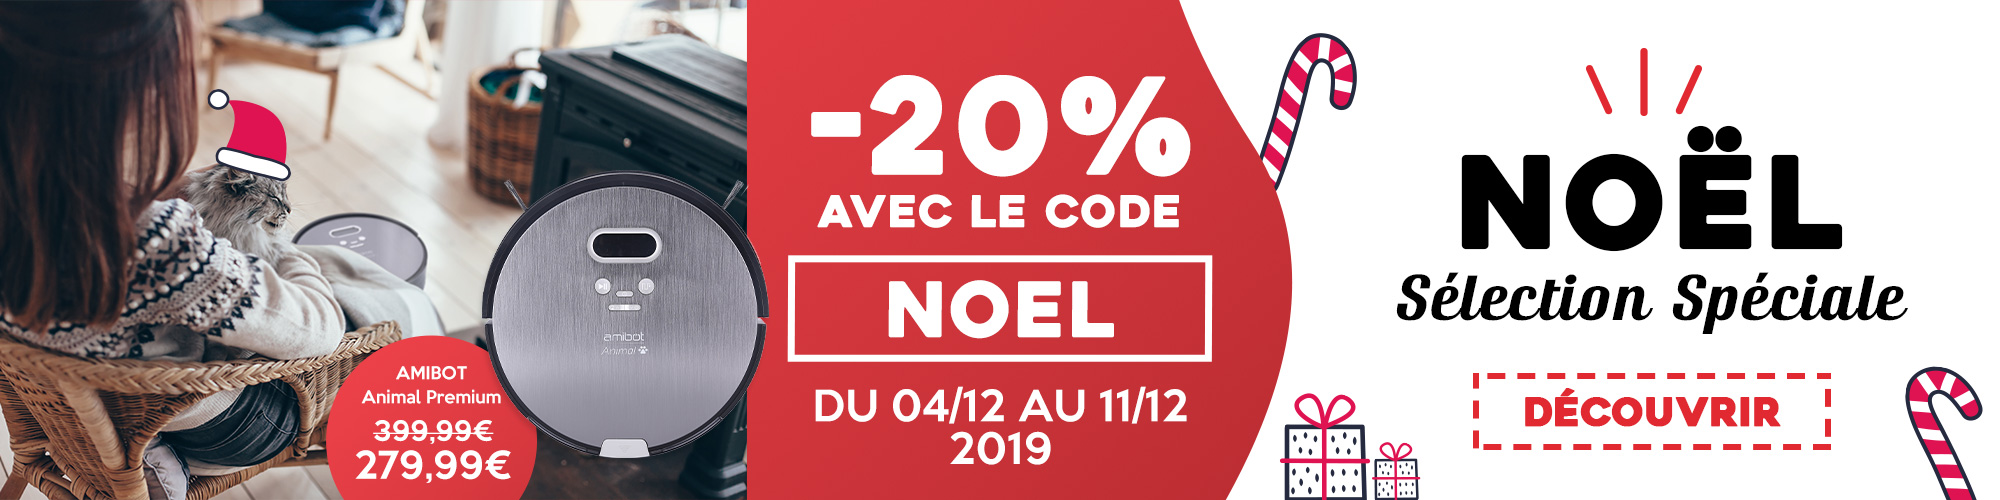 promotion noel 2019